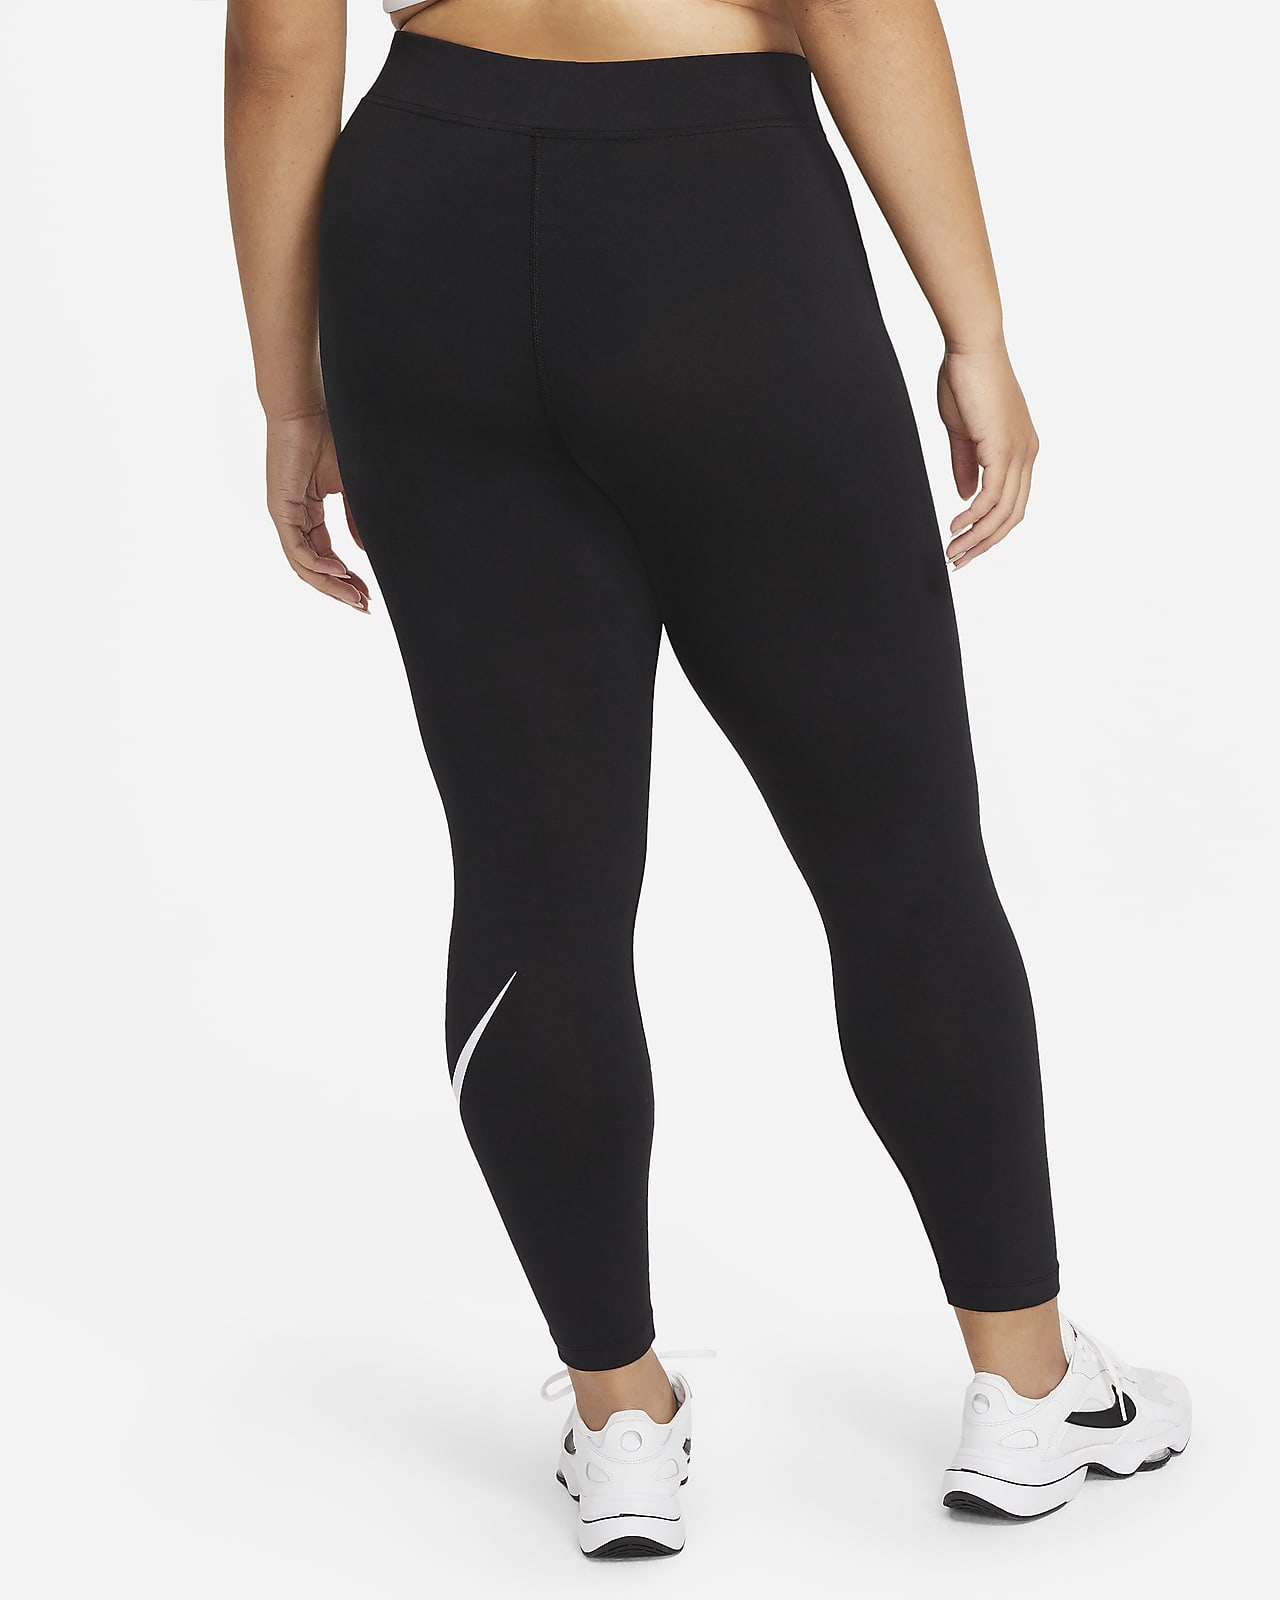 Nike Sportswear Women's Mid-Rise Leggings (Plus Size). .com